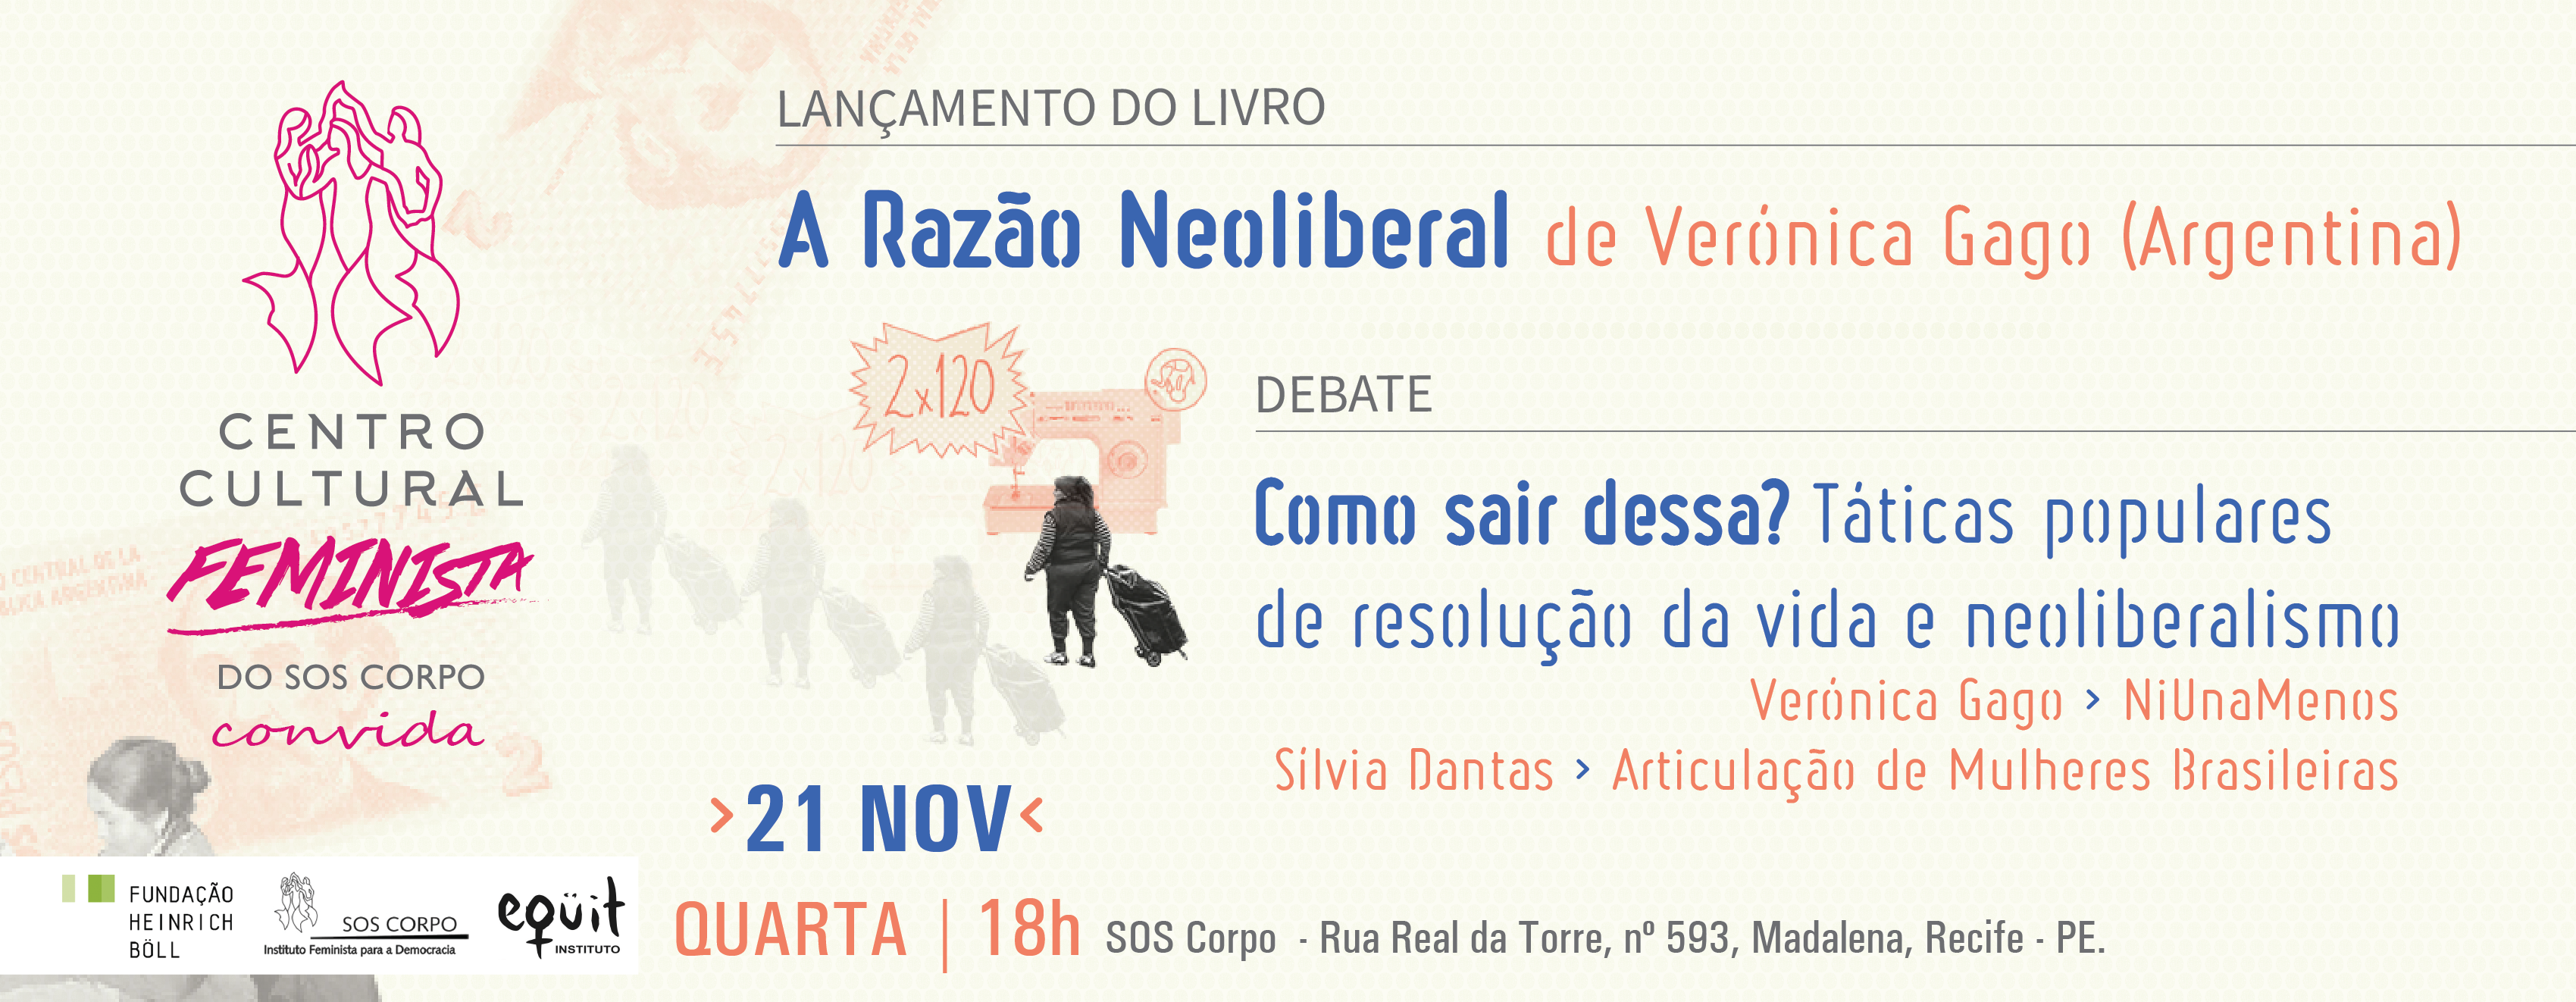 Debate e lançamento de livro sobre neoliberalismo são destaques do Centro Cultural Feminista do SOS Corpo, próxima quarta, dia 21.